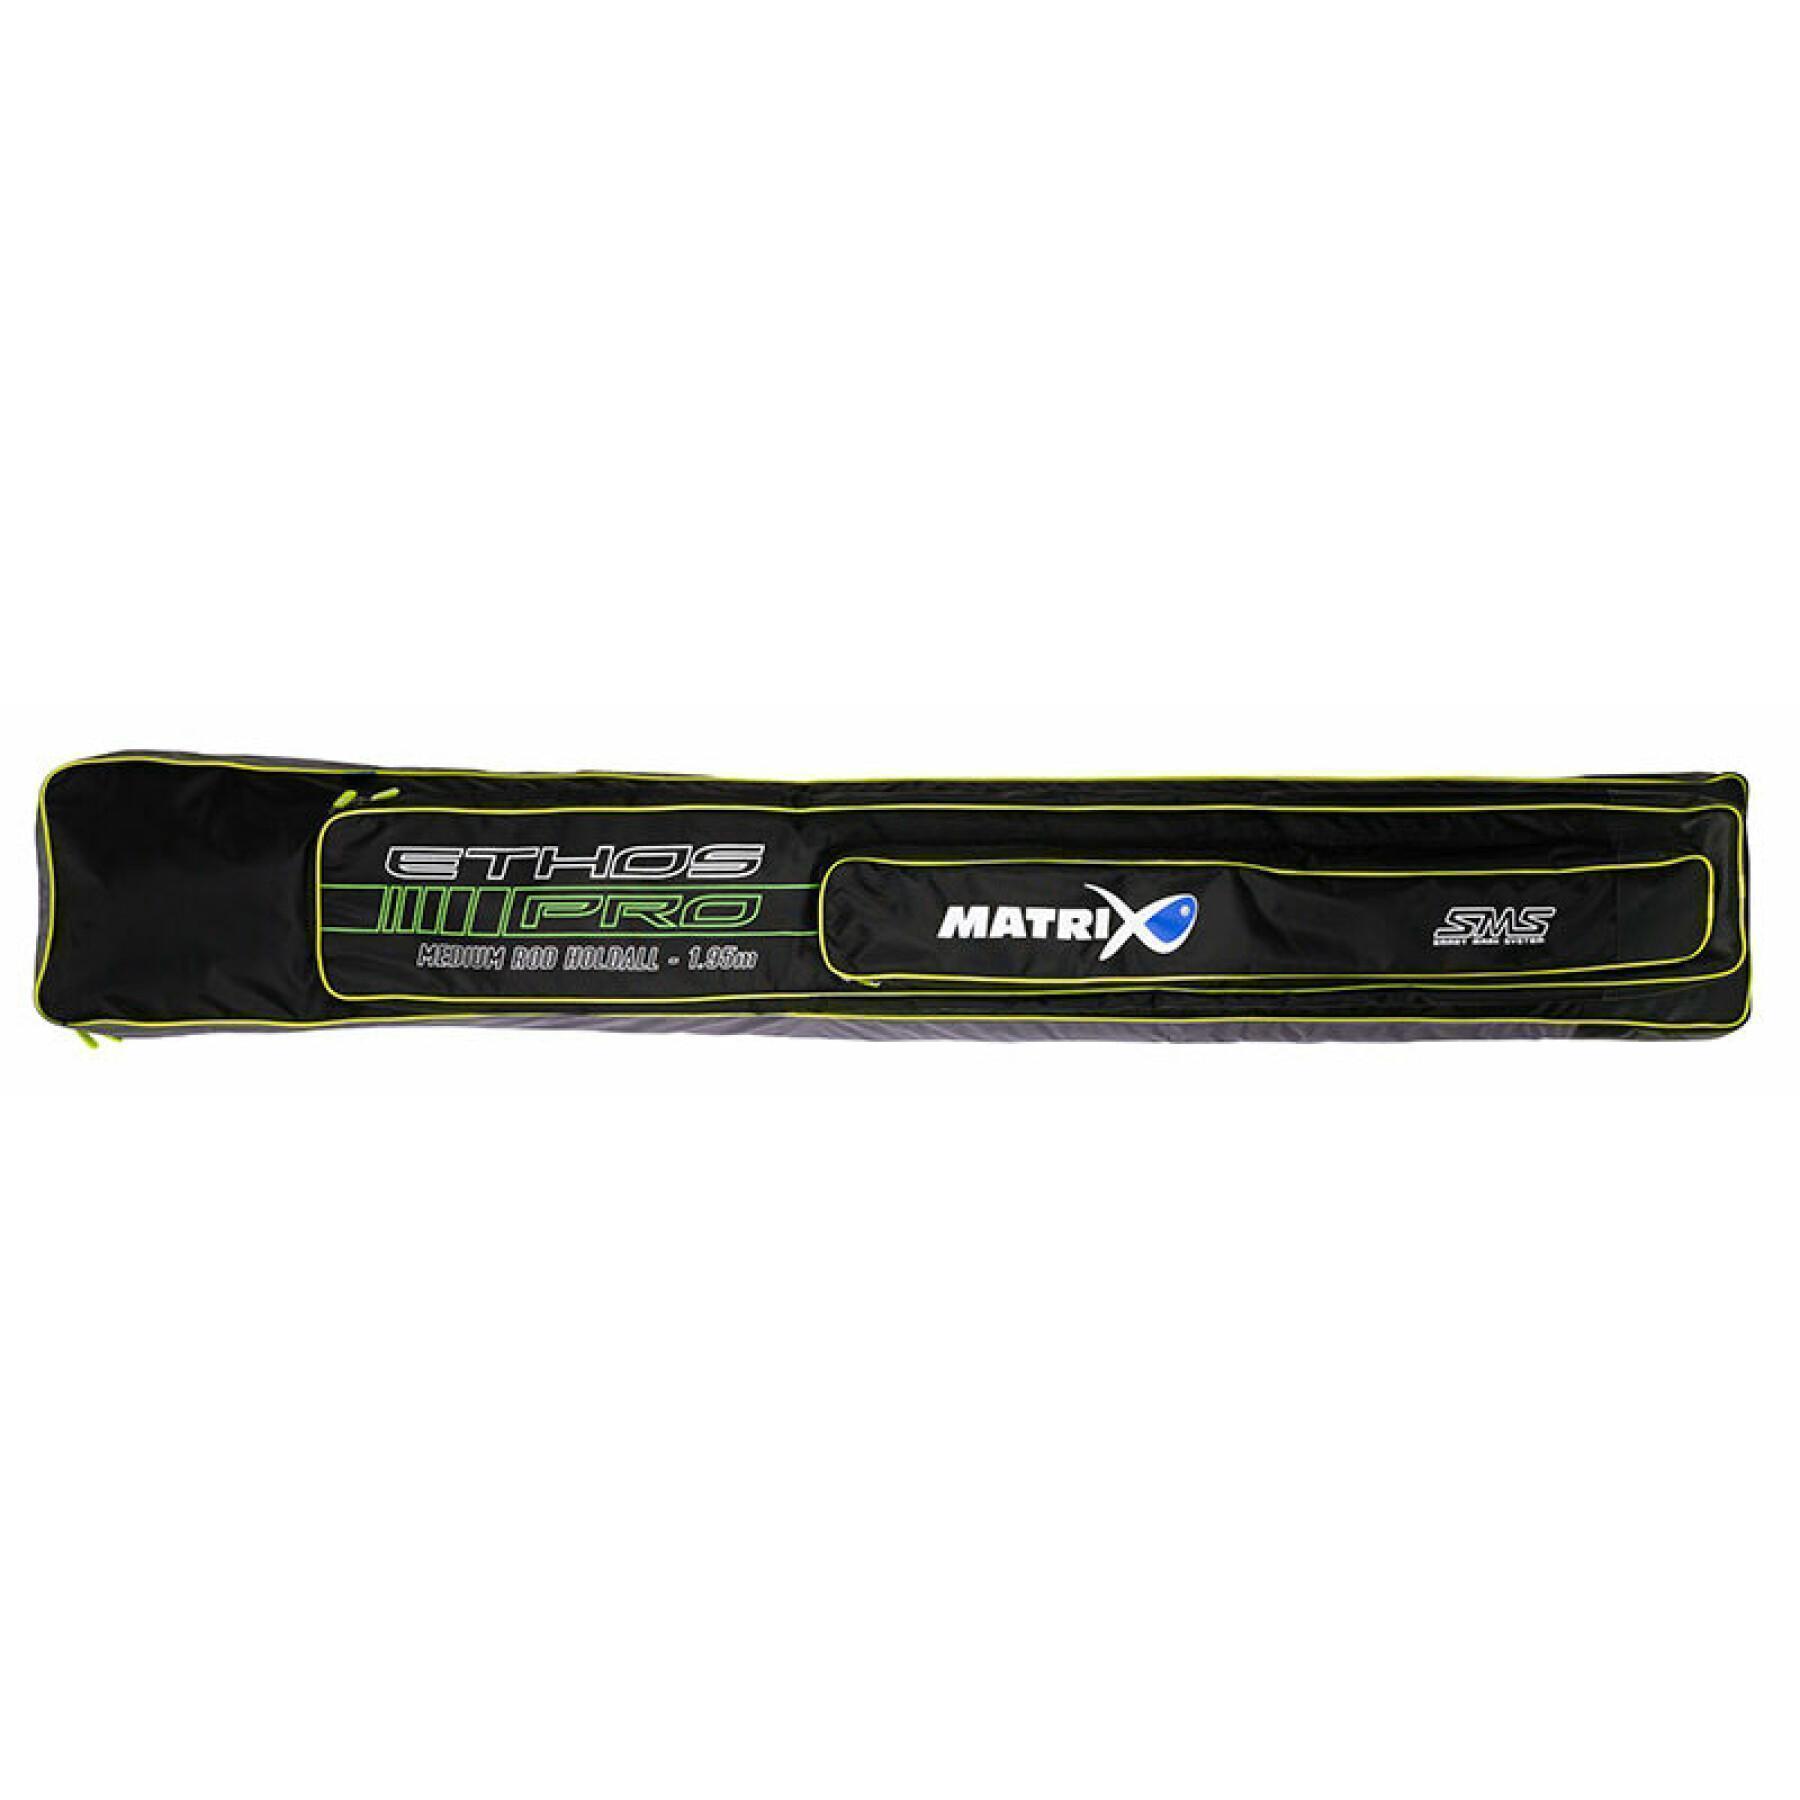 Paket med karpspön Matrix MTX3 ultra 16m